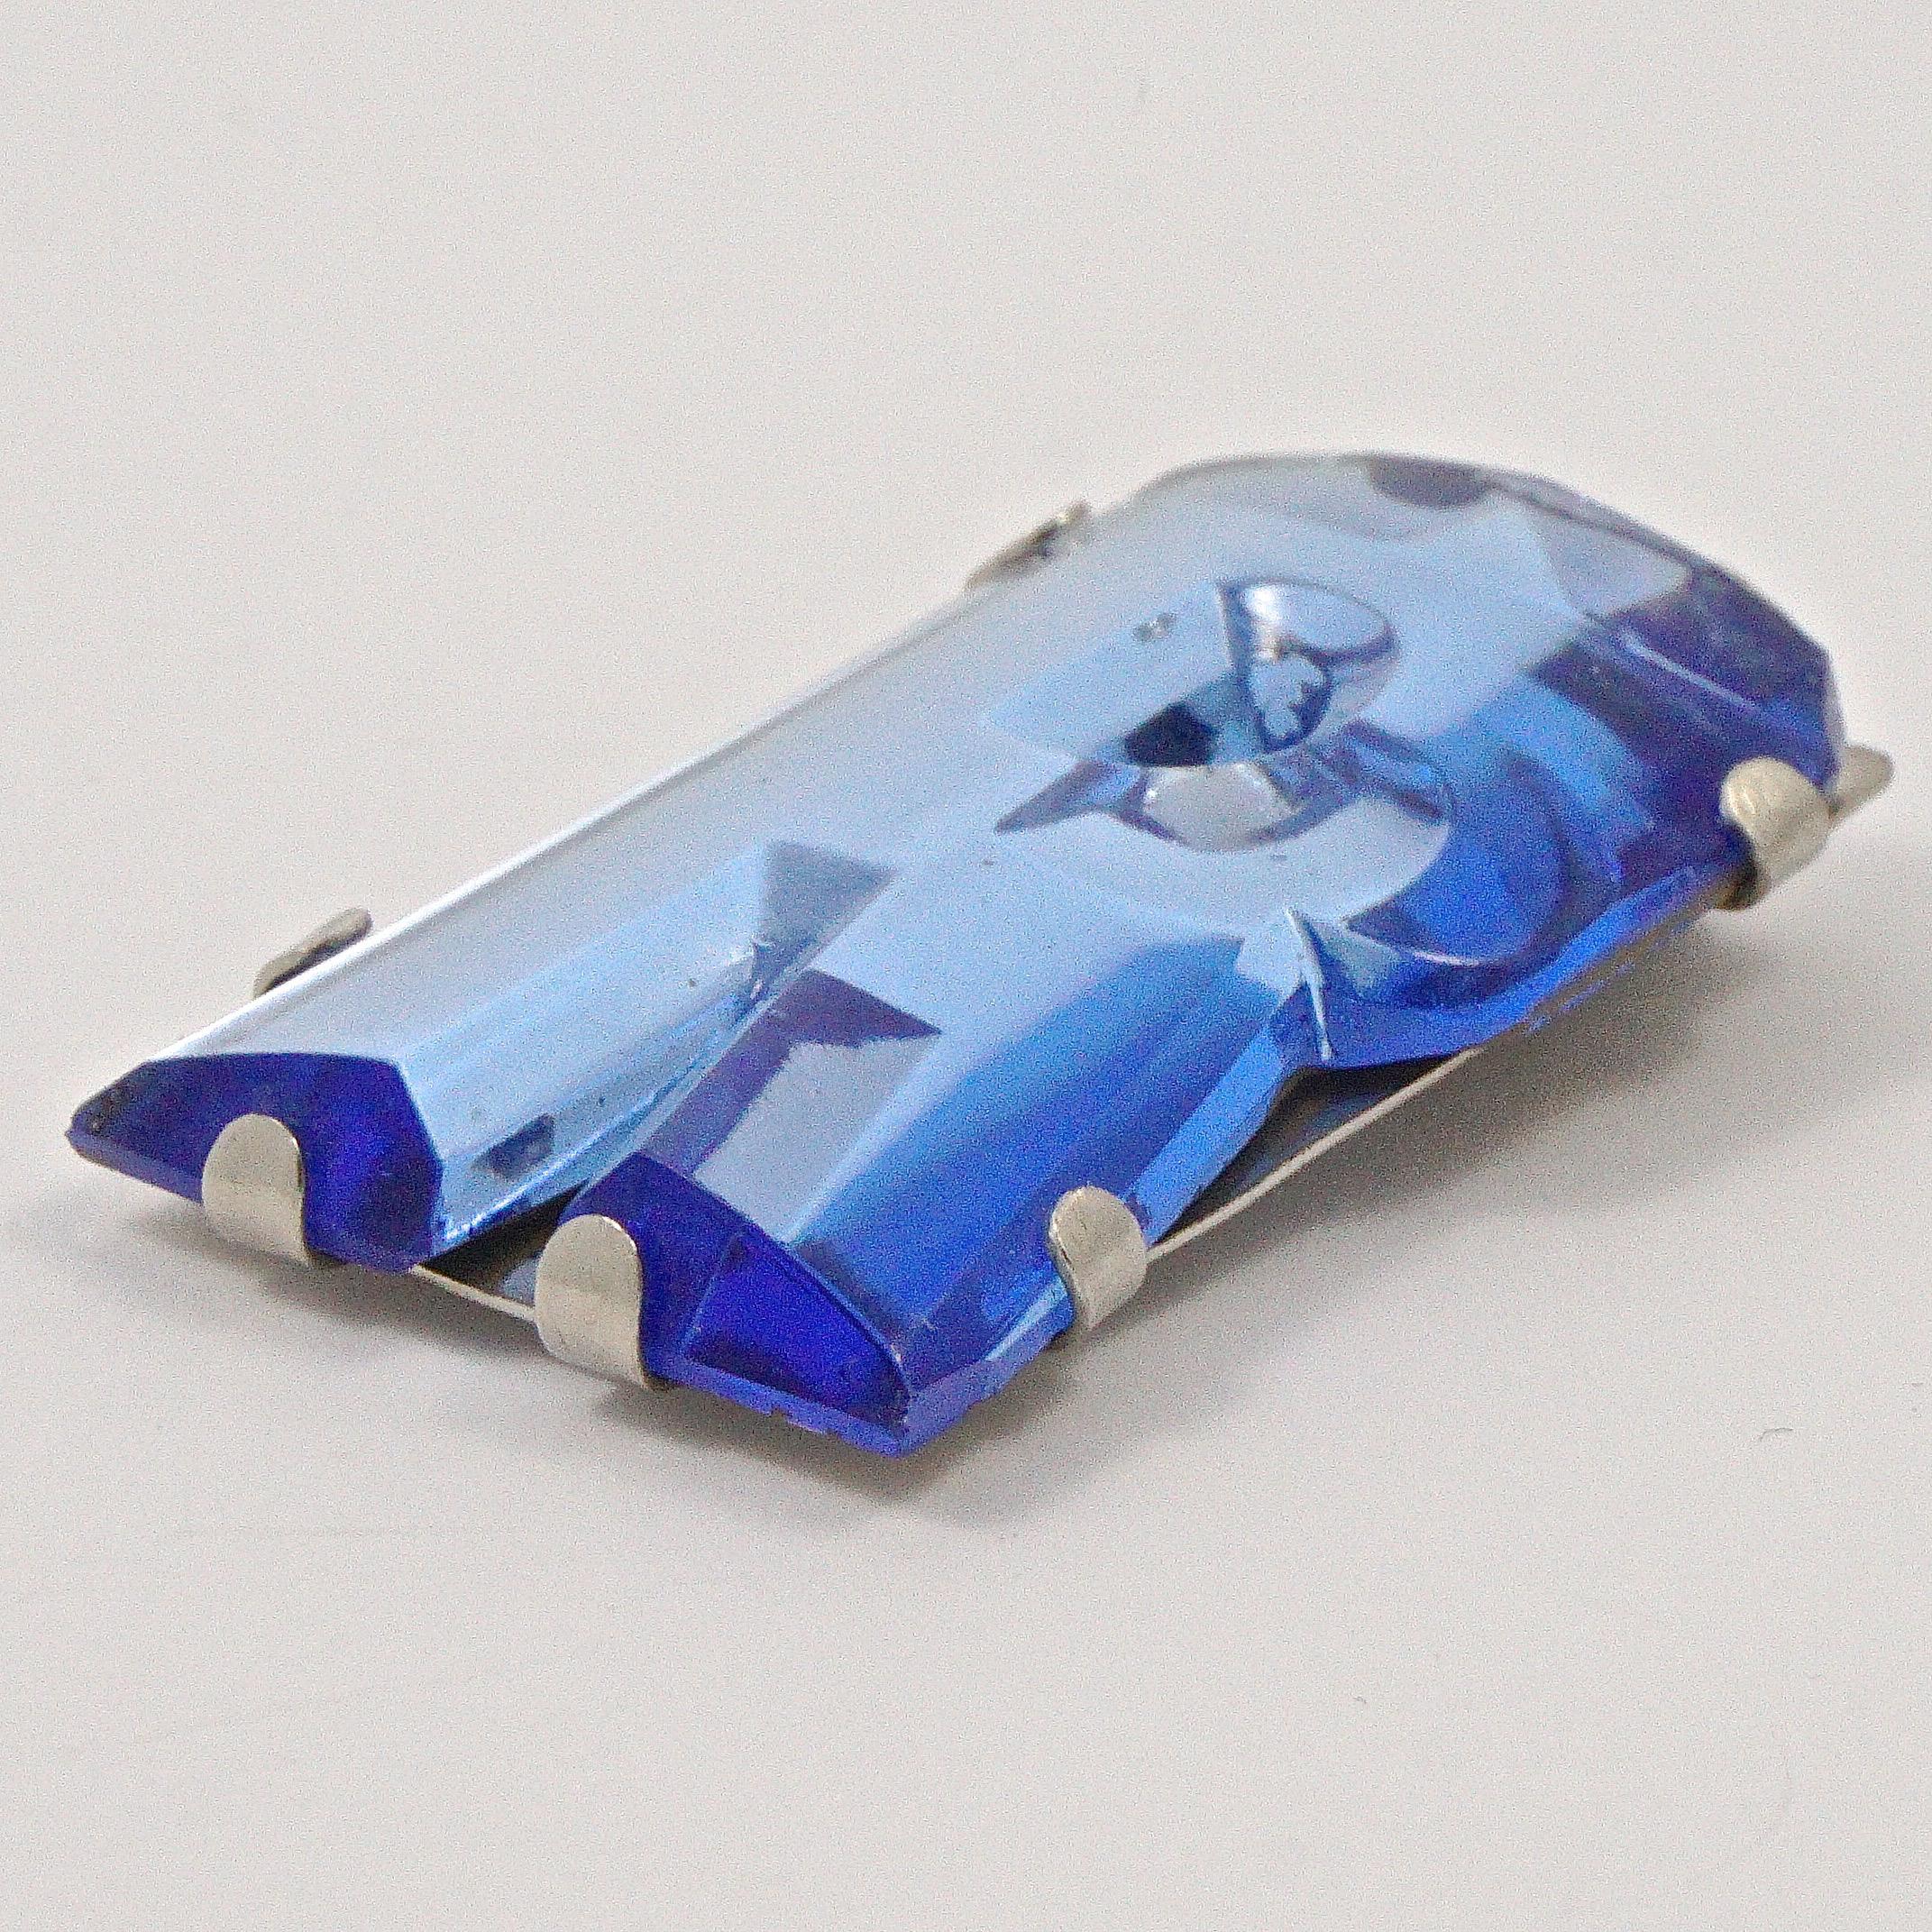 Pince à robe Art Déco en verre bleu miroir avec initiales R dans une monture en argent. La partie supérieure est facettée. Longueur de 4 cm / 1,57 pouces et largeur maximale de 2,3 cm / 0,9 pouce.  Le clip de la robe est en très bon état, il y a